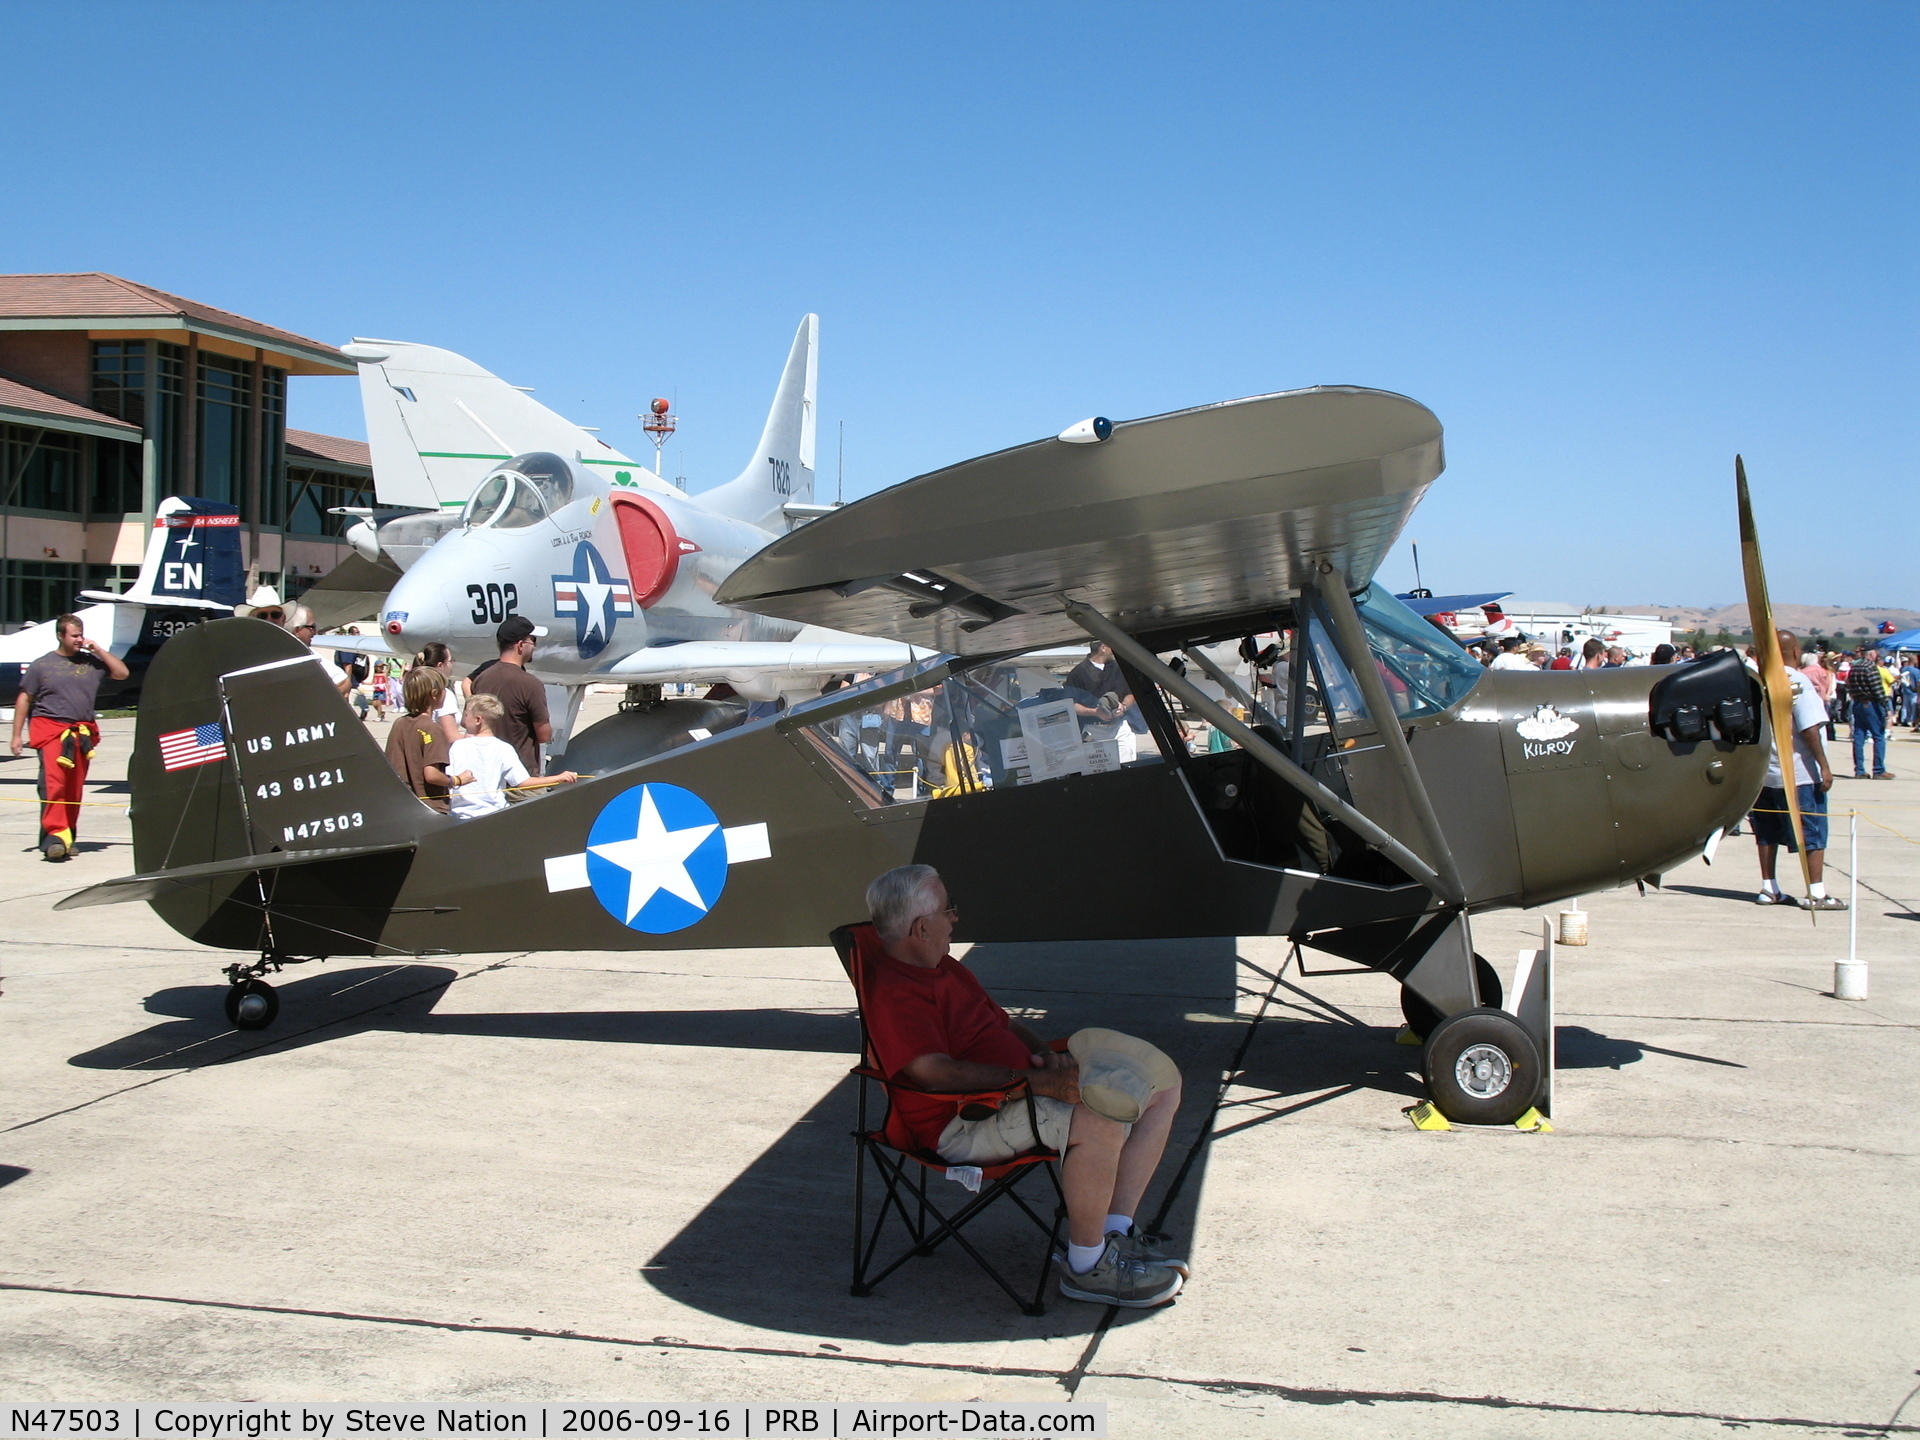 N47503, 1943 Aeronca 0-58B Grasshopper C/N 058B-8212, 1943 Aeronca O-58B as US Army 43-8121 